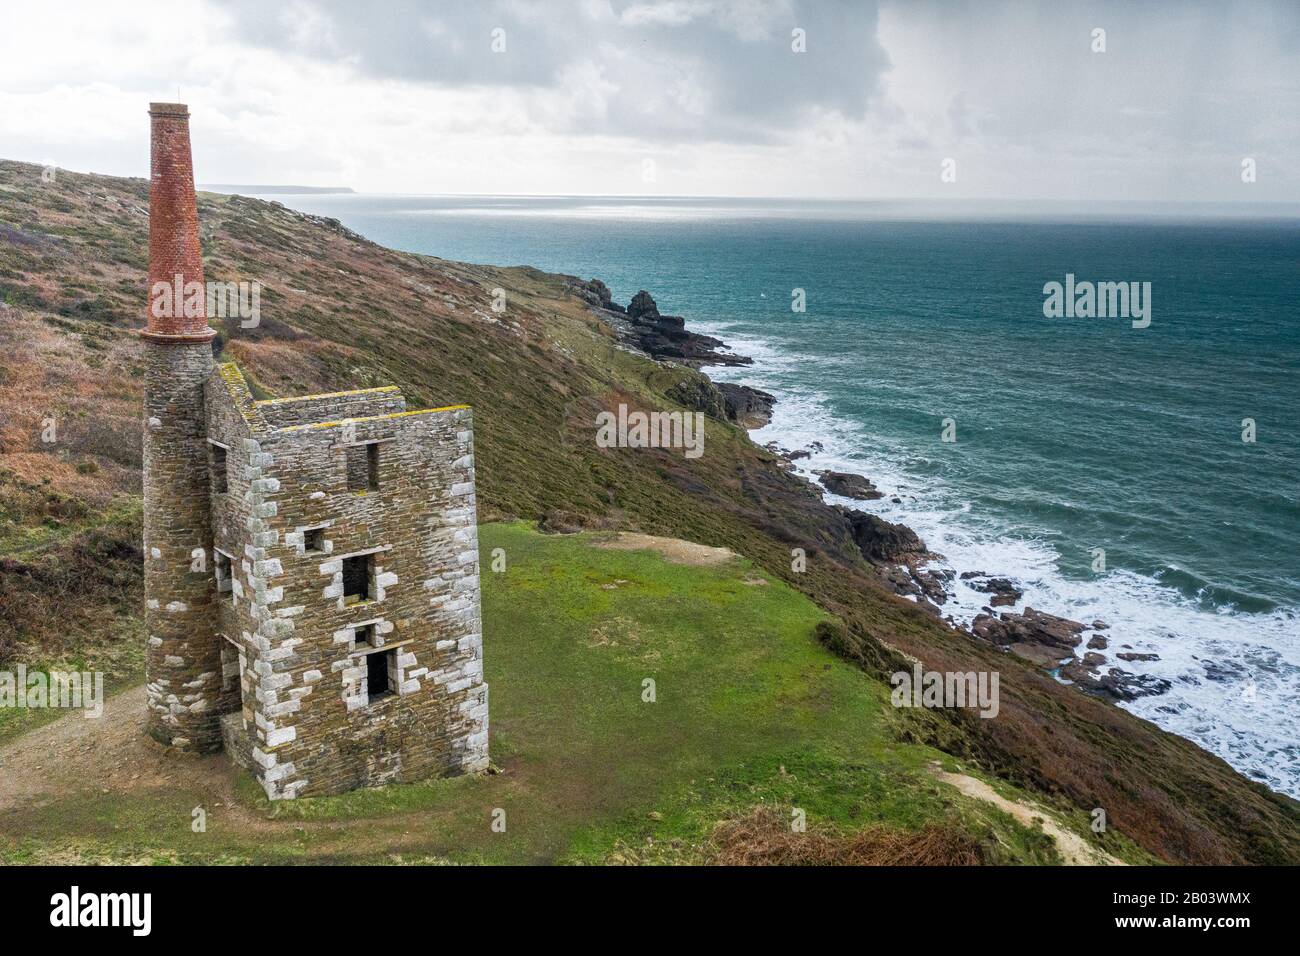 MIne house on Cornish cliffs overlooking rough sea. Stock Photo